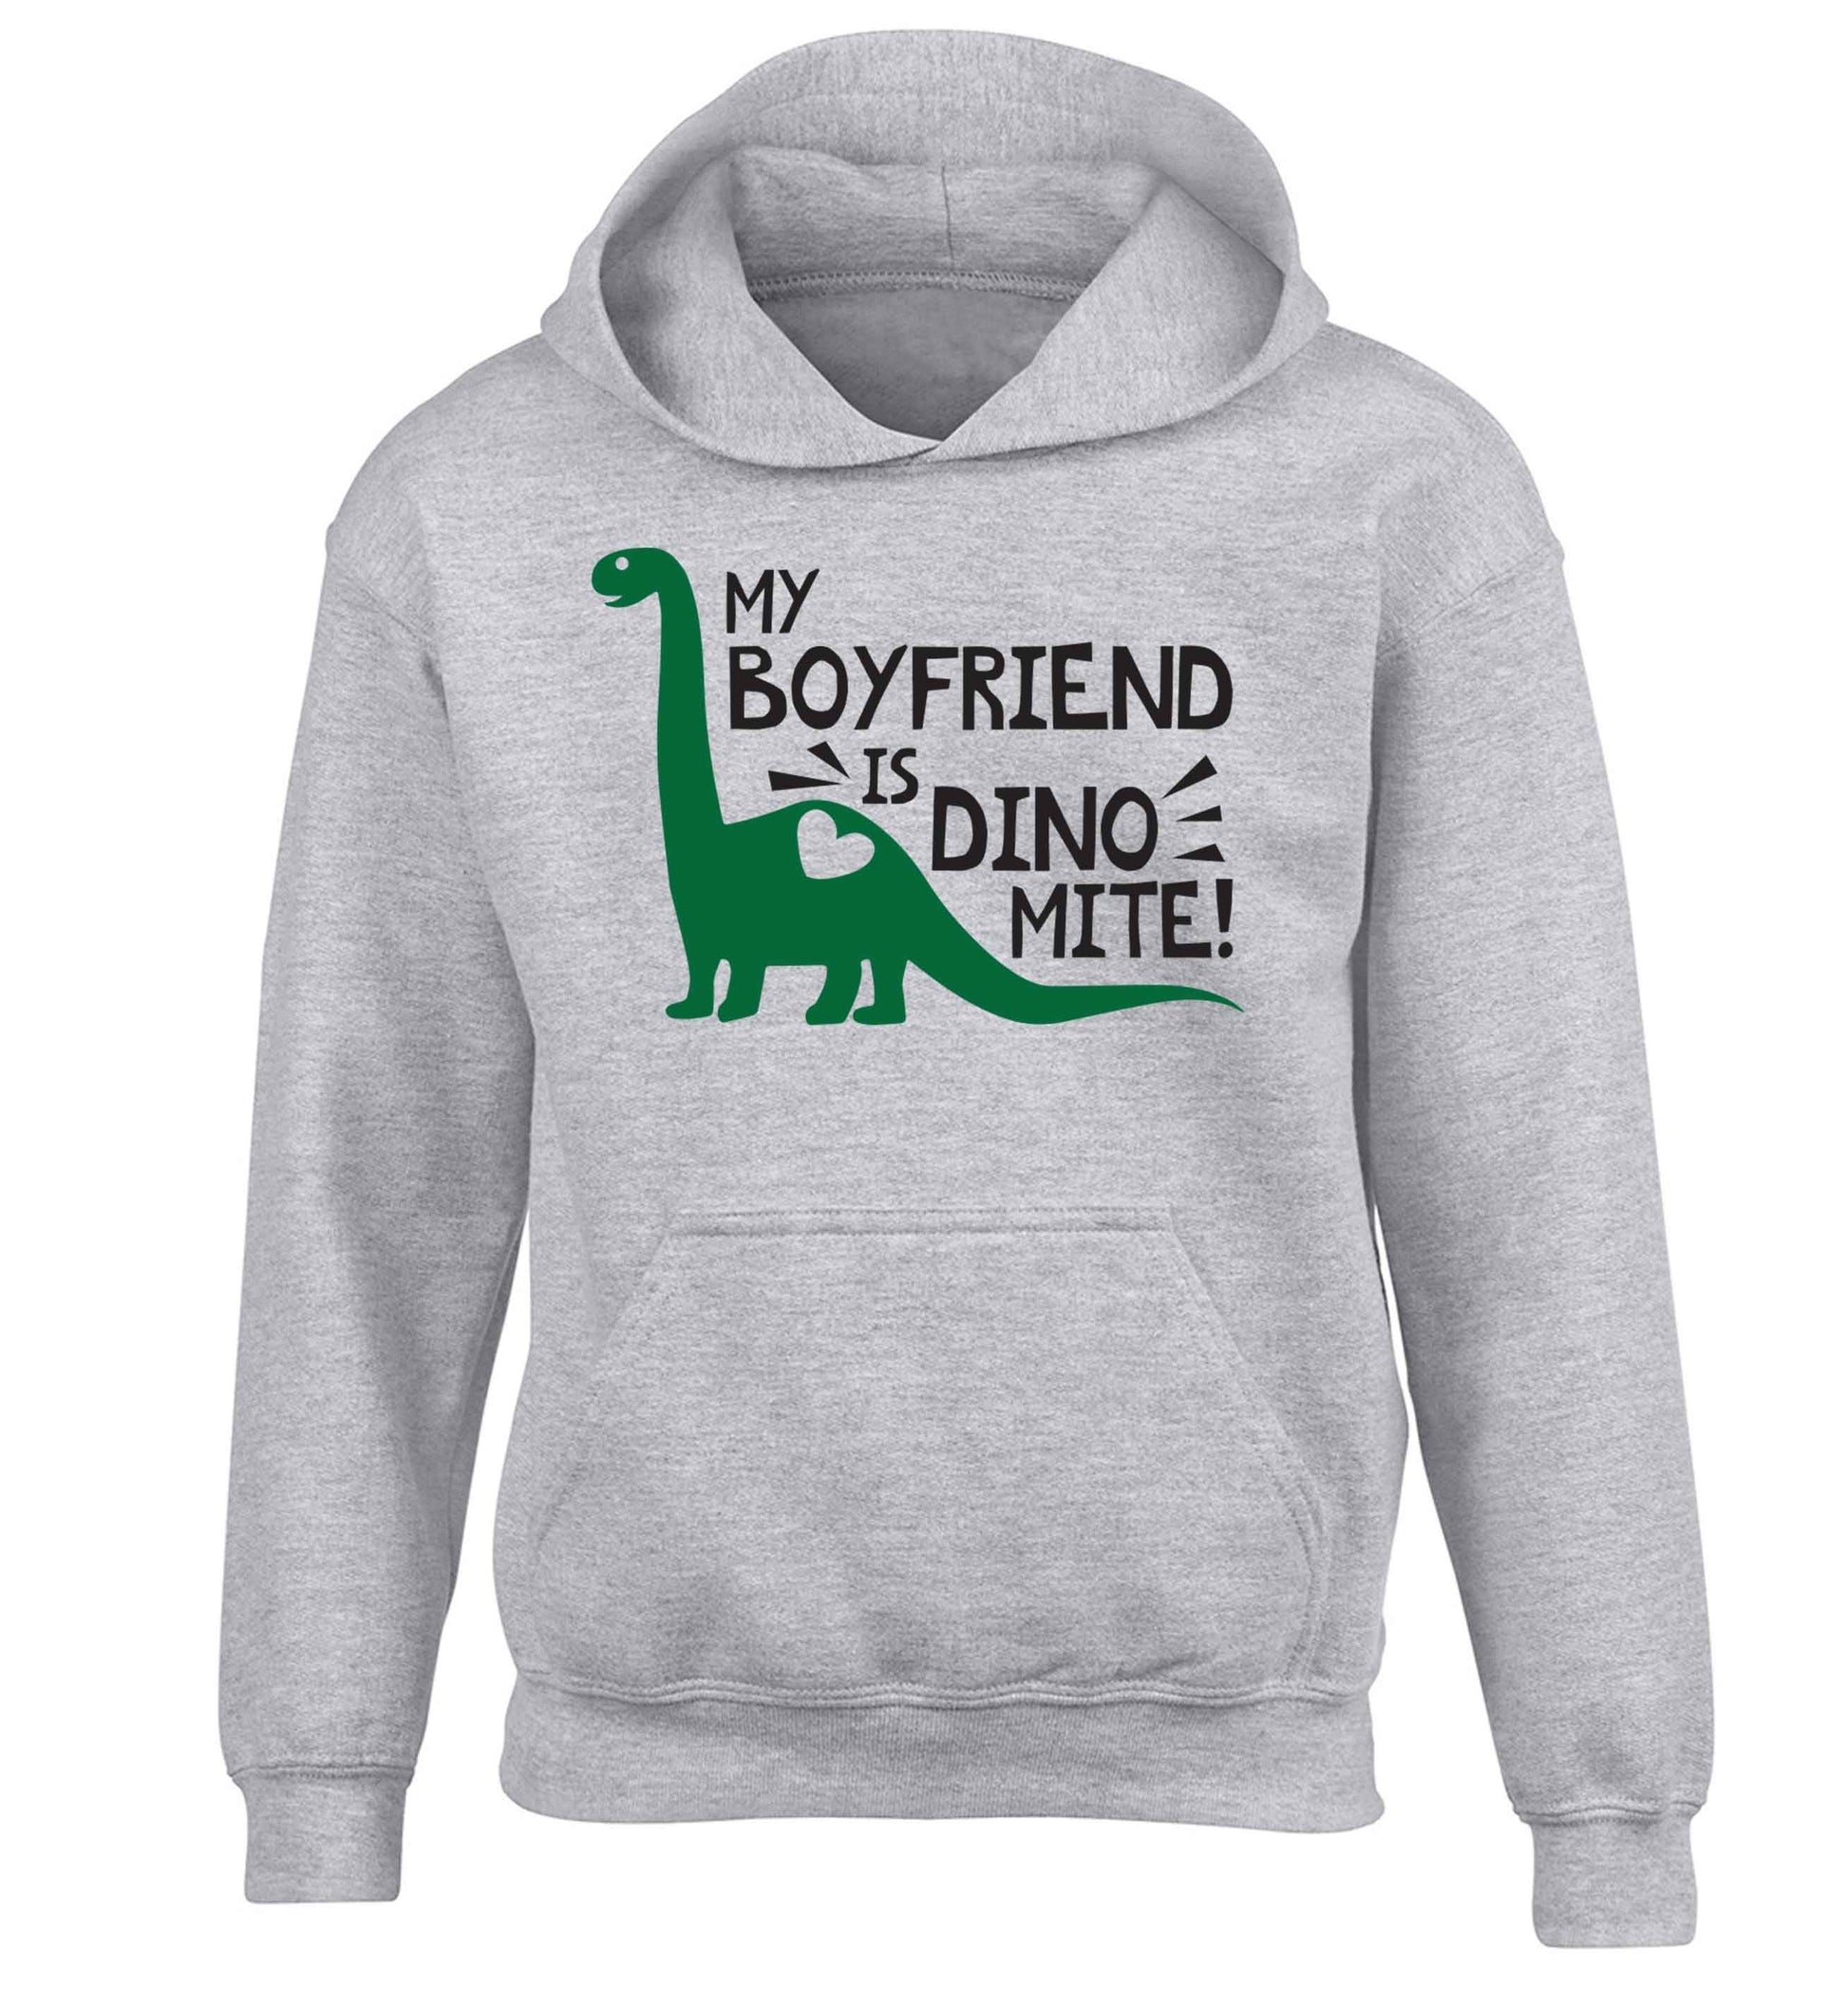 My boyfriend is dinomite! children's grey hoodie 12-13 Years